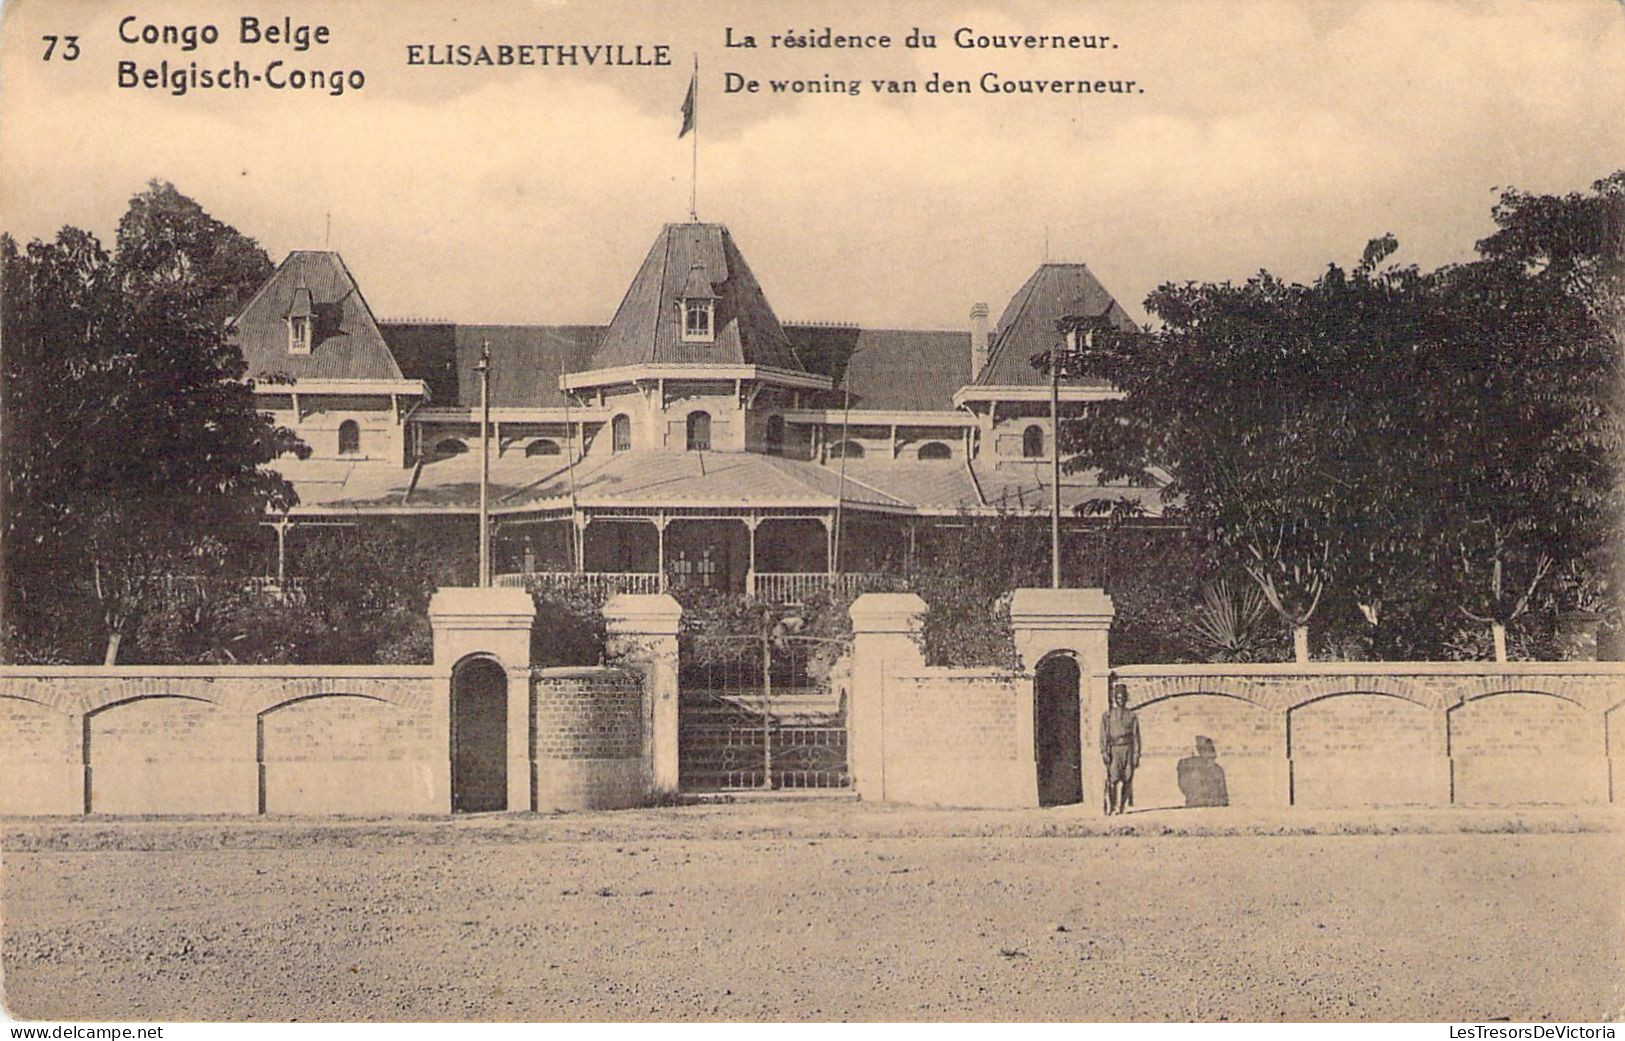 CONGO BELGE - Elisabethville - La Résidence Du Gouverneur - Carte Postale Ancienne - Belgisch-Congo